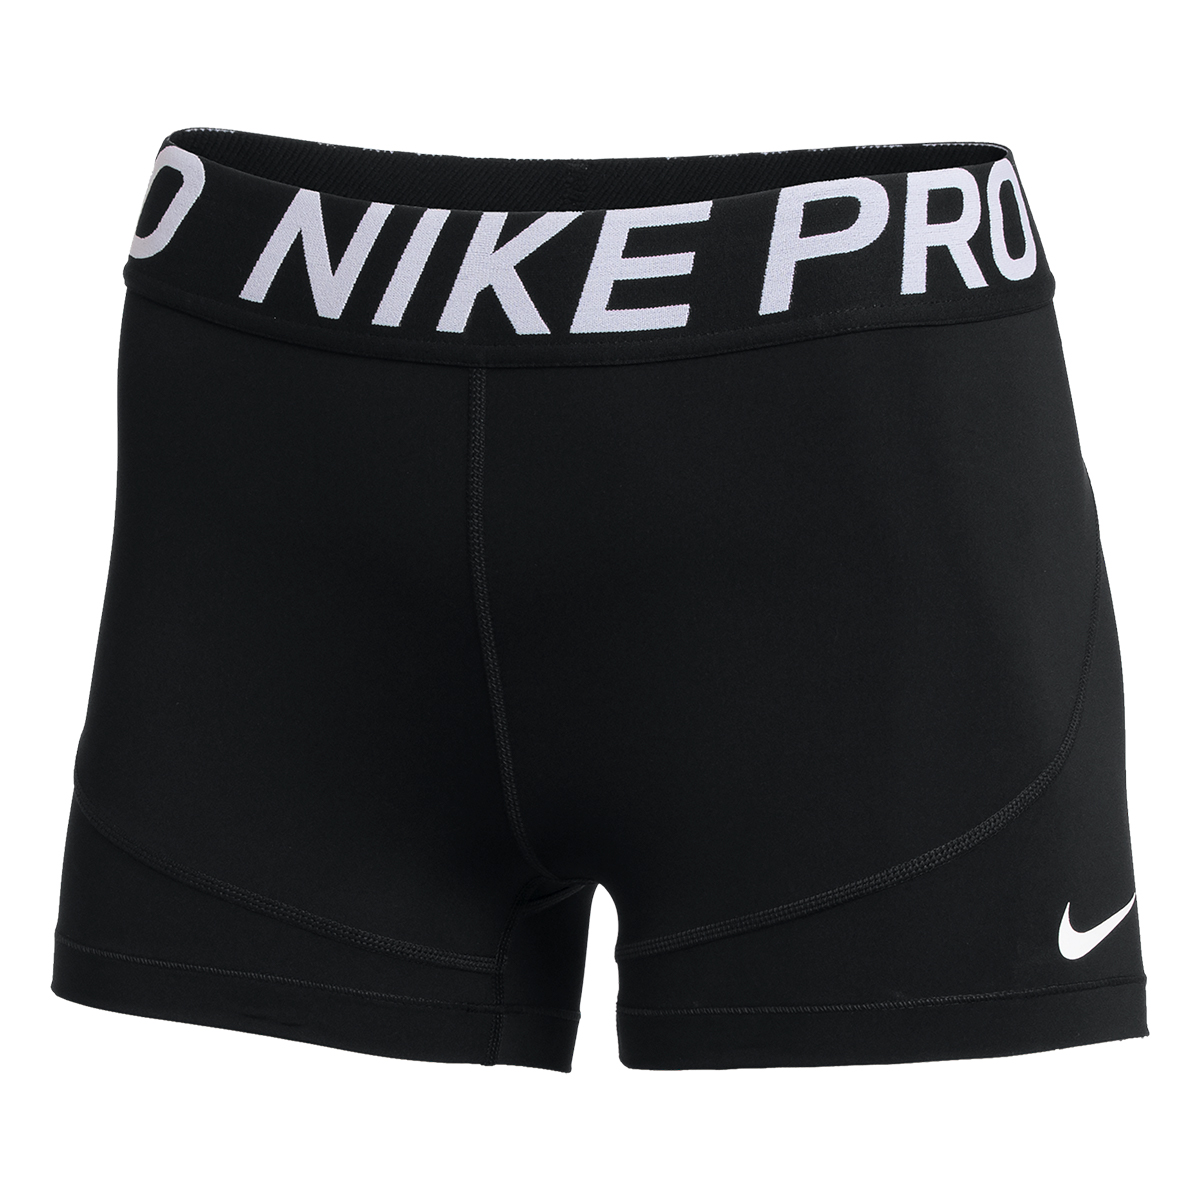 Nike 3" Pro Short, , large image number null